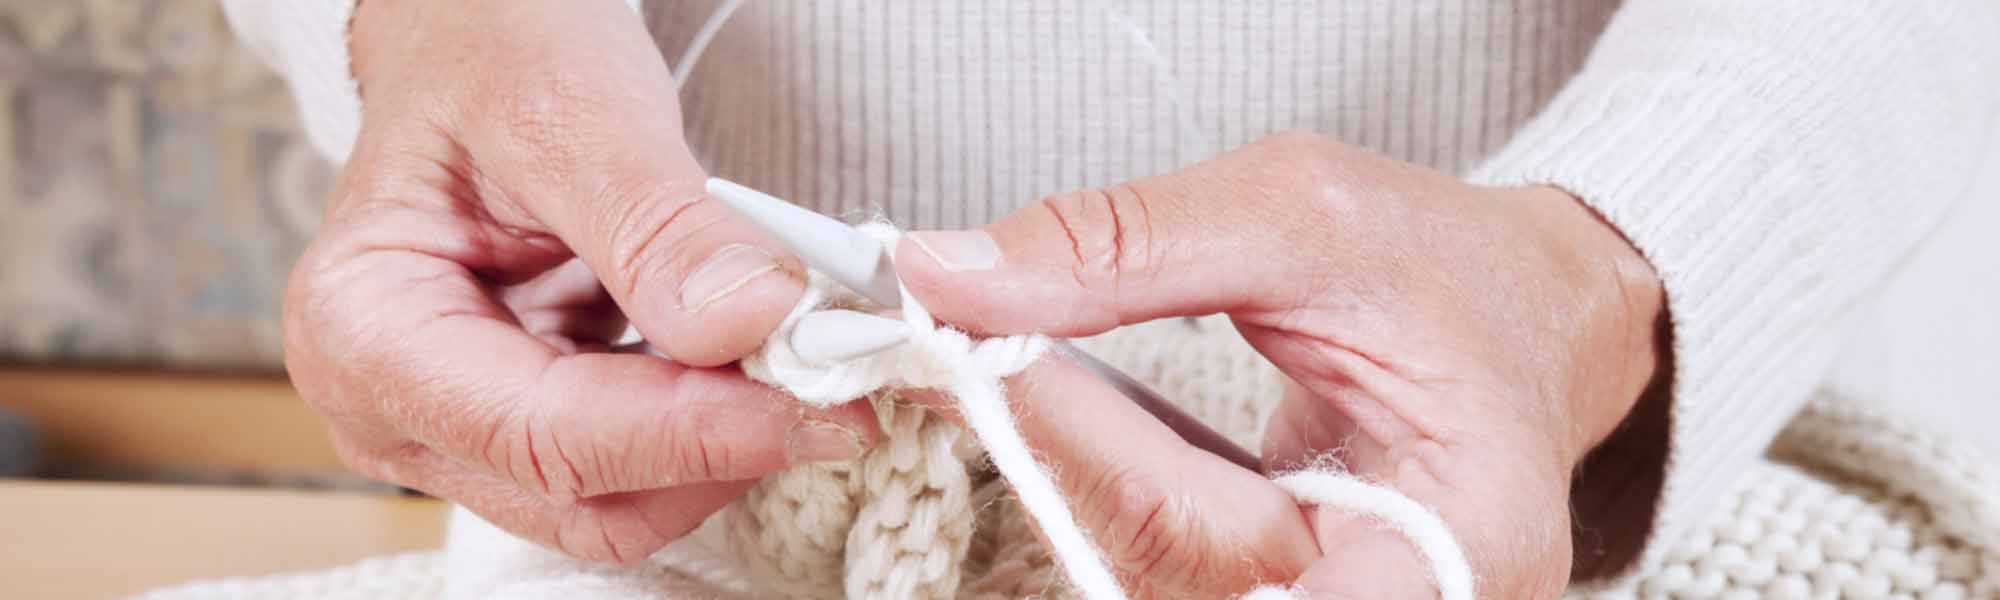 The Best Knitting Needles for Sock Knitting • The Knitting Needle